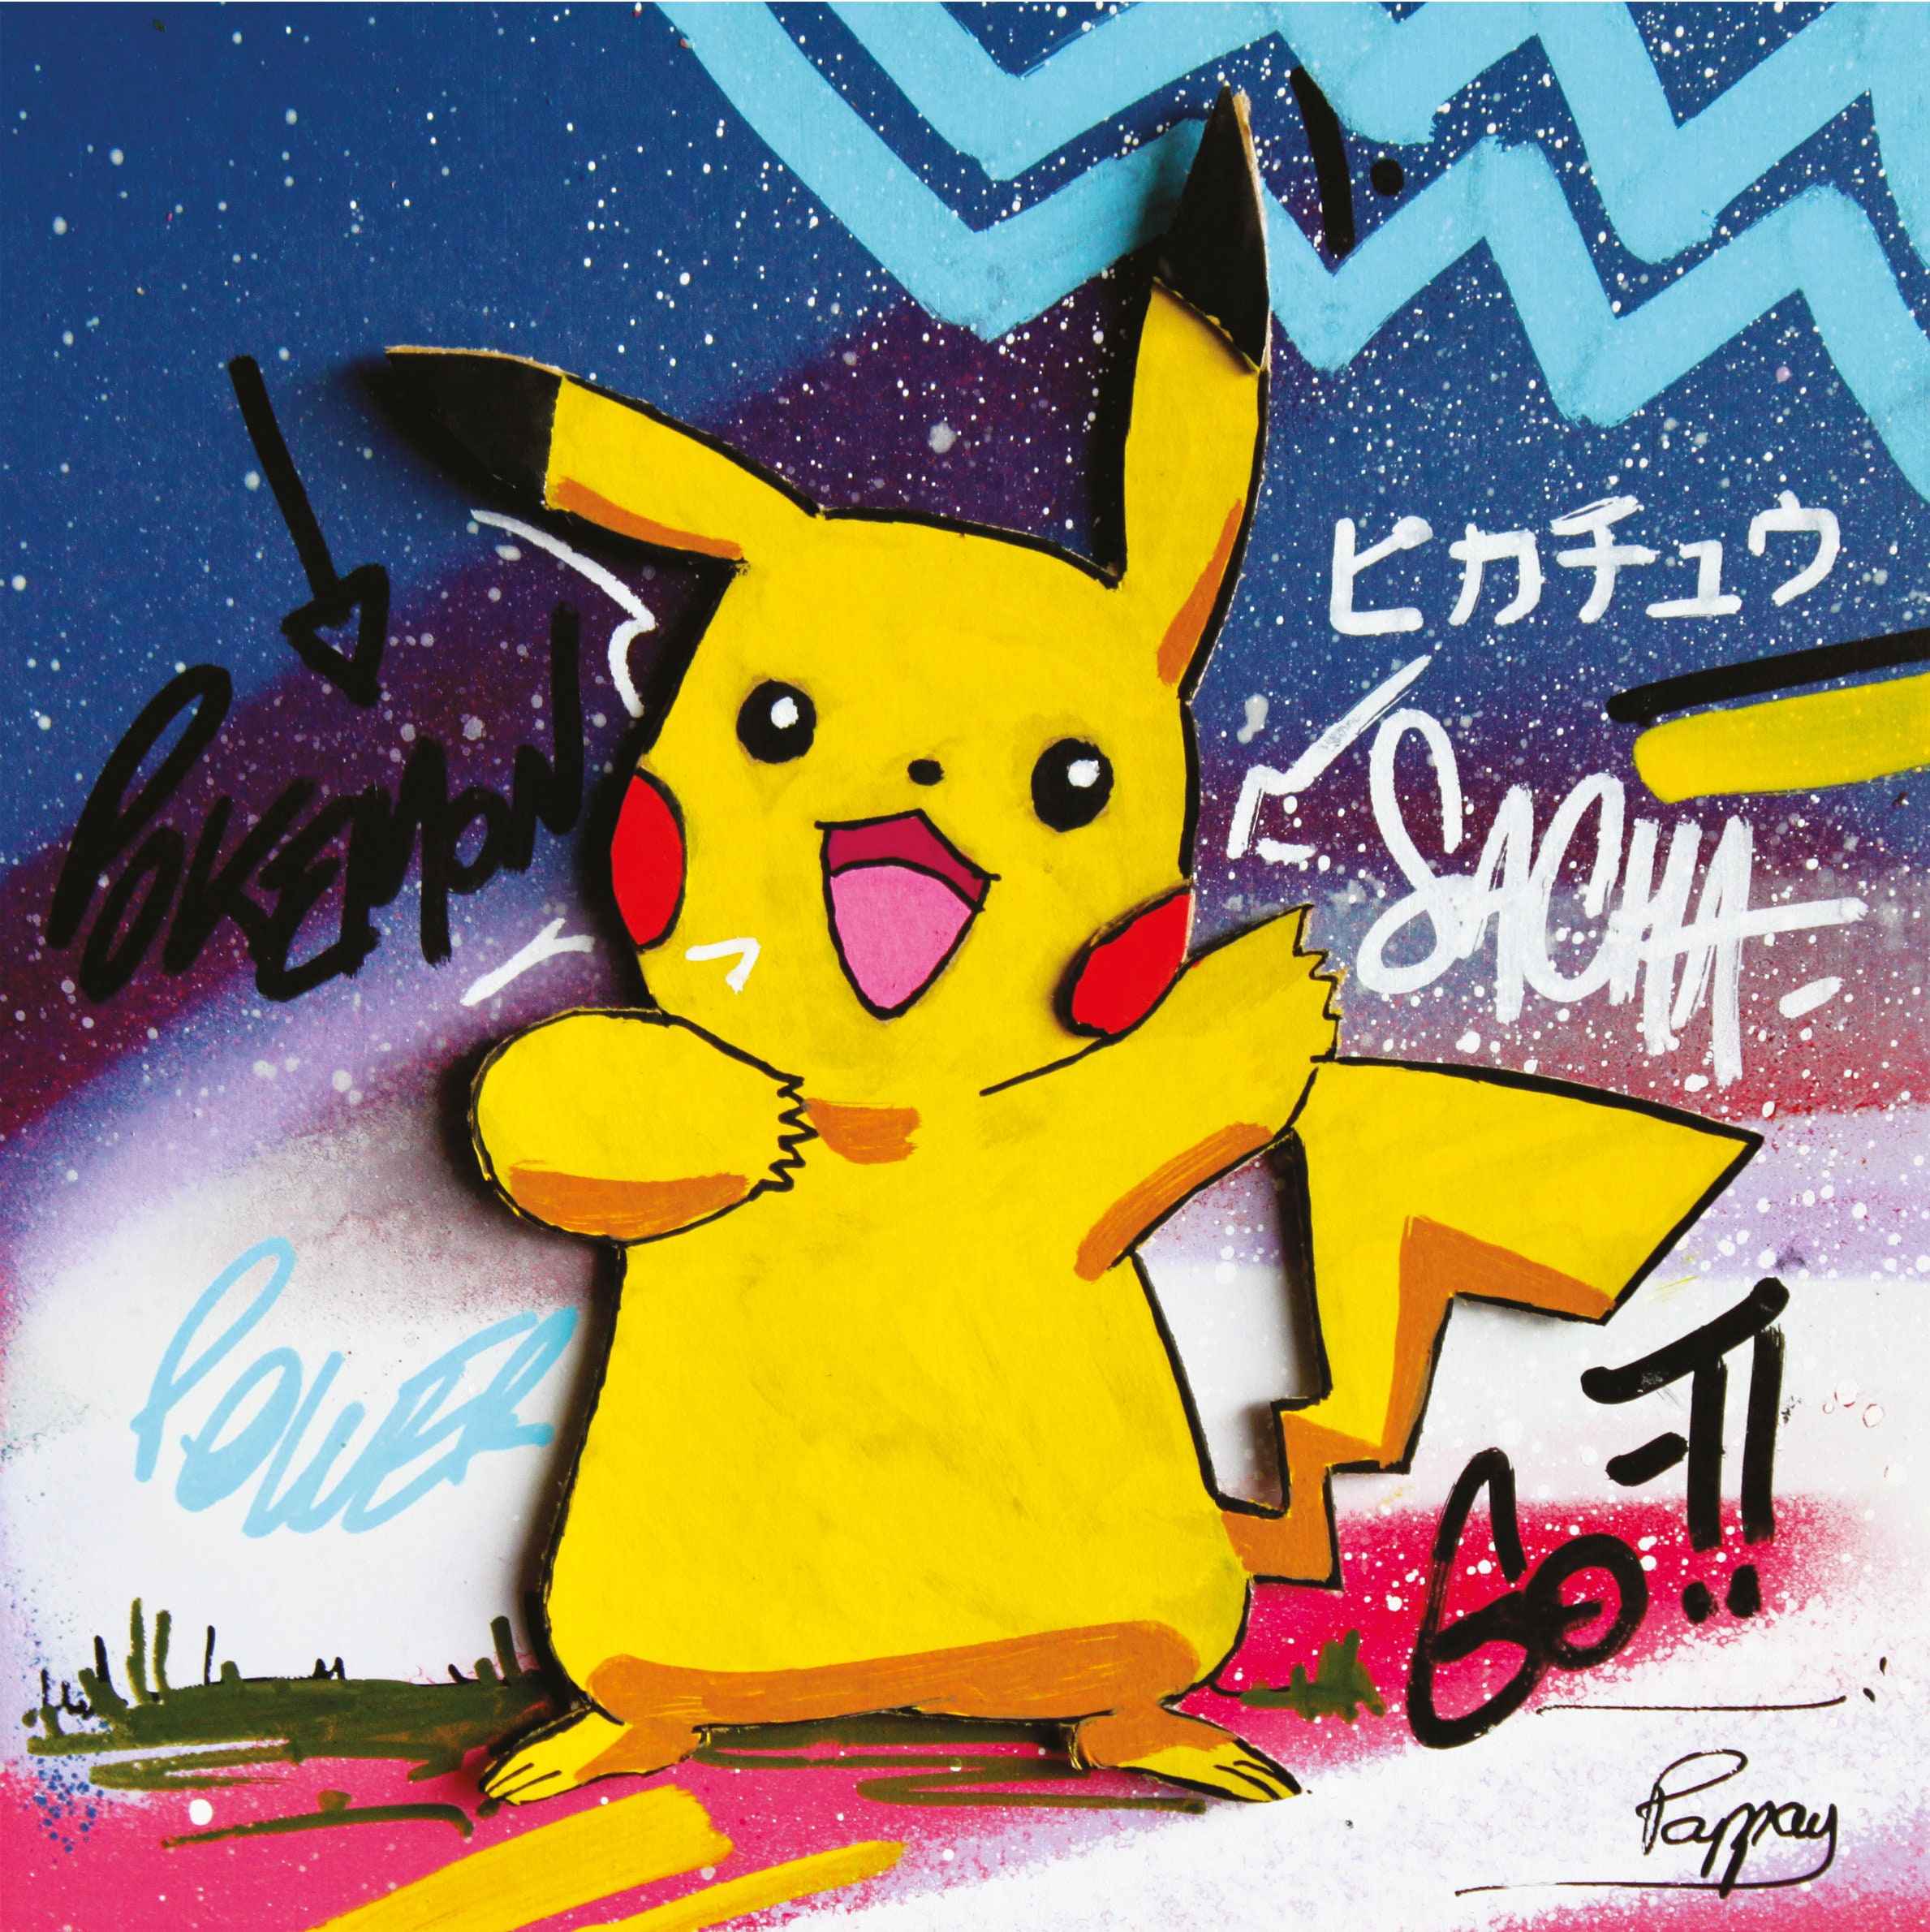 Pikachu Kawaii, again Kathytoons - Illustrations ART street